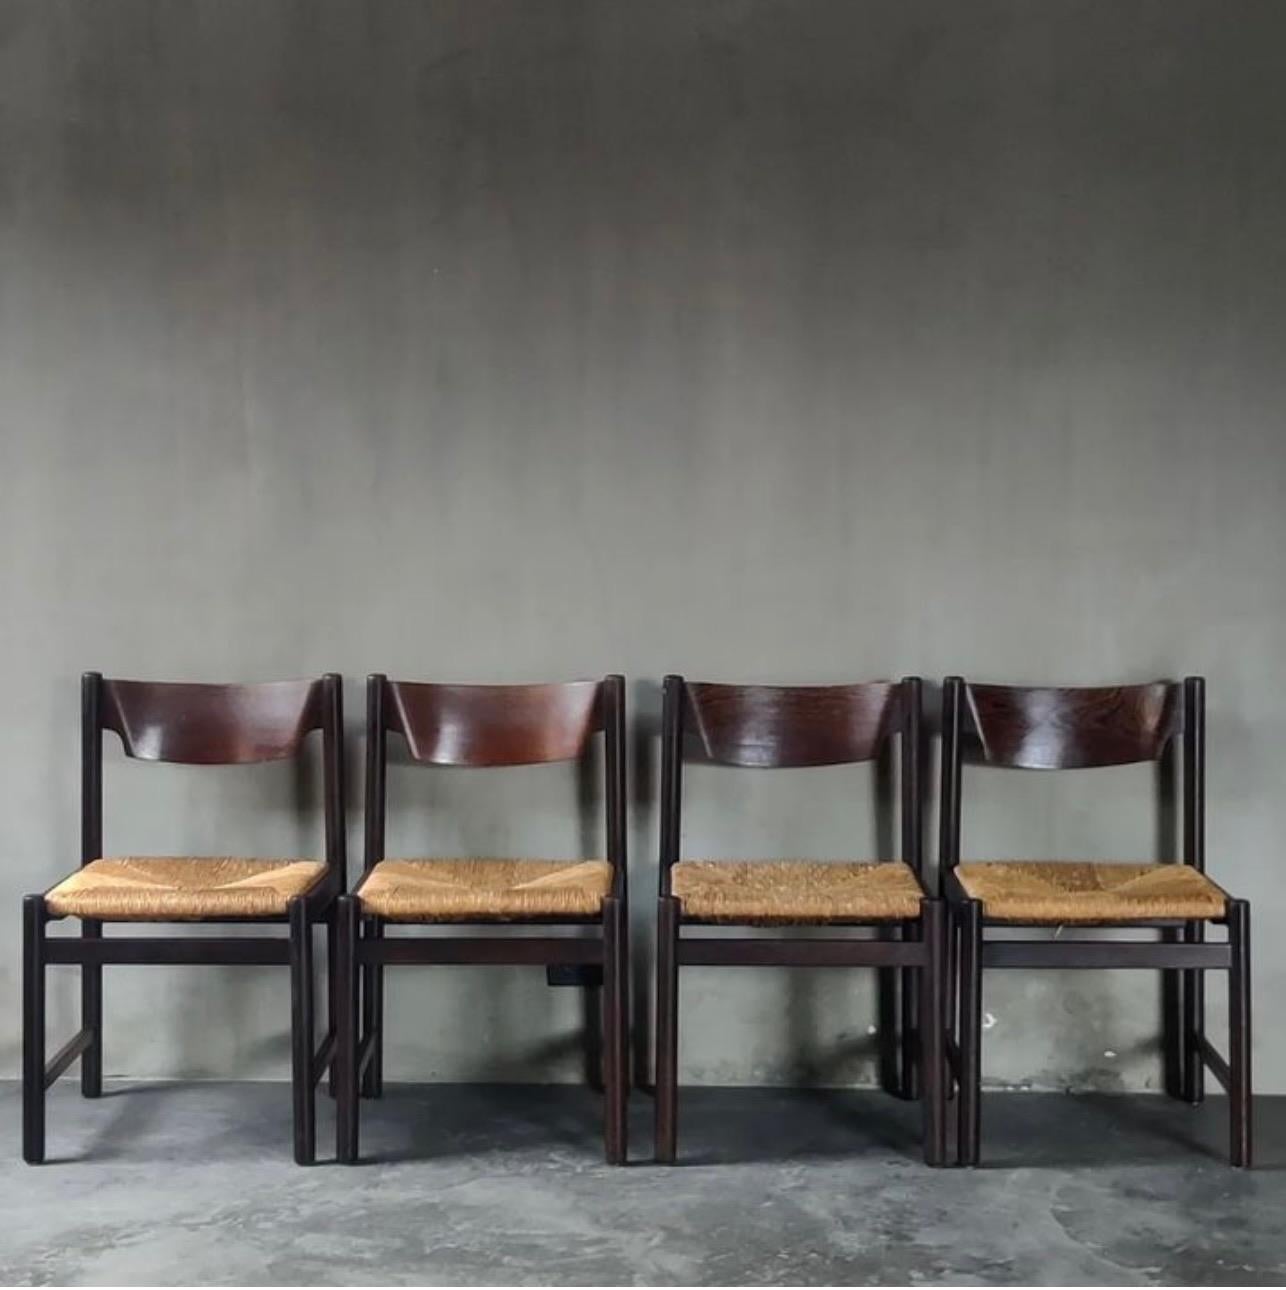 Ensemble de quatre chaises de salle à manger néerlandaises du milieu du siècle en wenge (autrement appelé bois dur) avec sièges en jonc tressé, conçues par Martin Visser pour Spectrum. Chic et moderne, avec une ambiance décontractée, de type